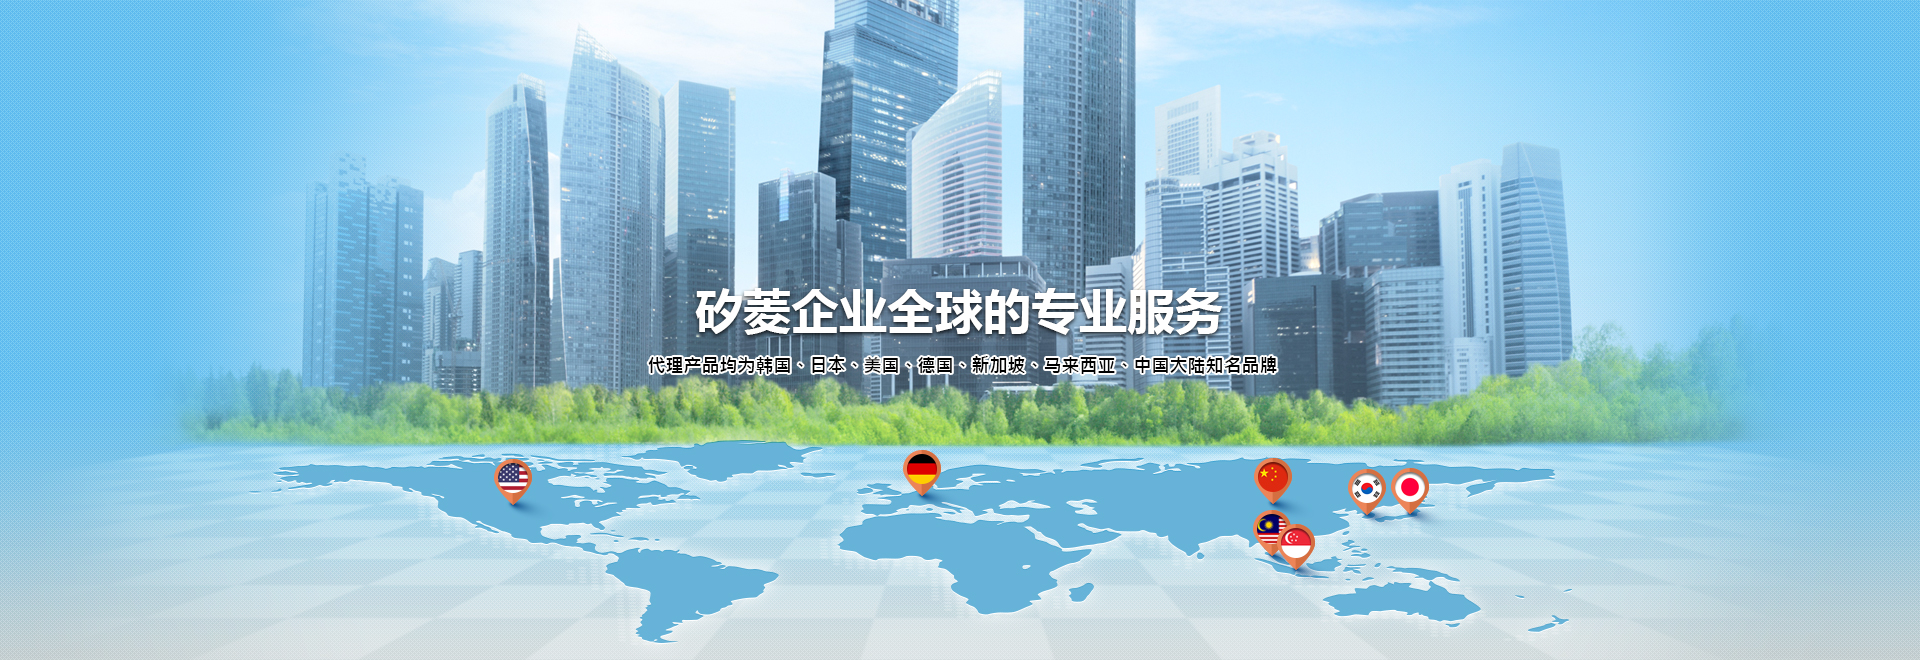 矽菱企业全球的专业服务 代理产品均为韩国、日本、美国、德国、新加坡、马来西亚、中国大陆知名品牌